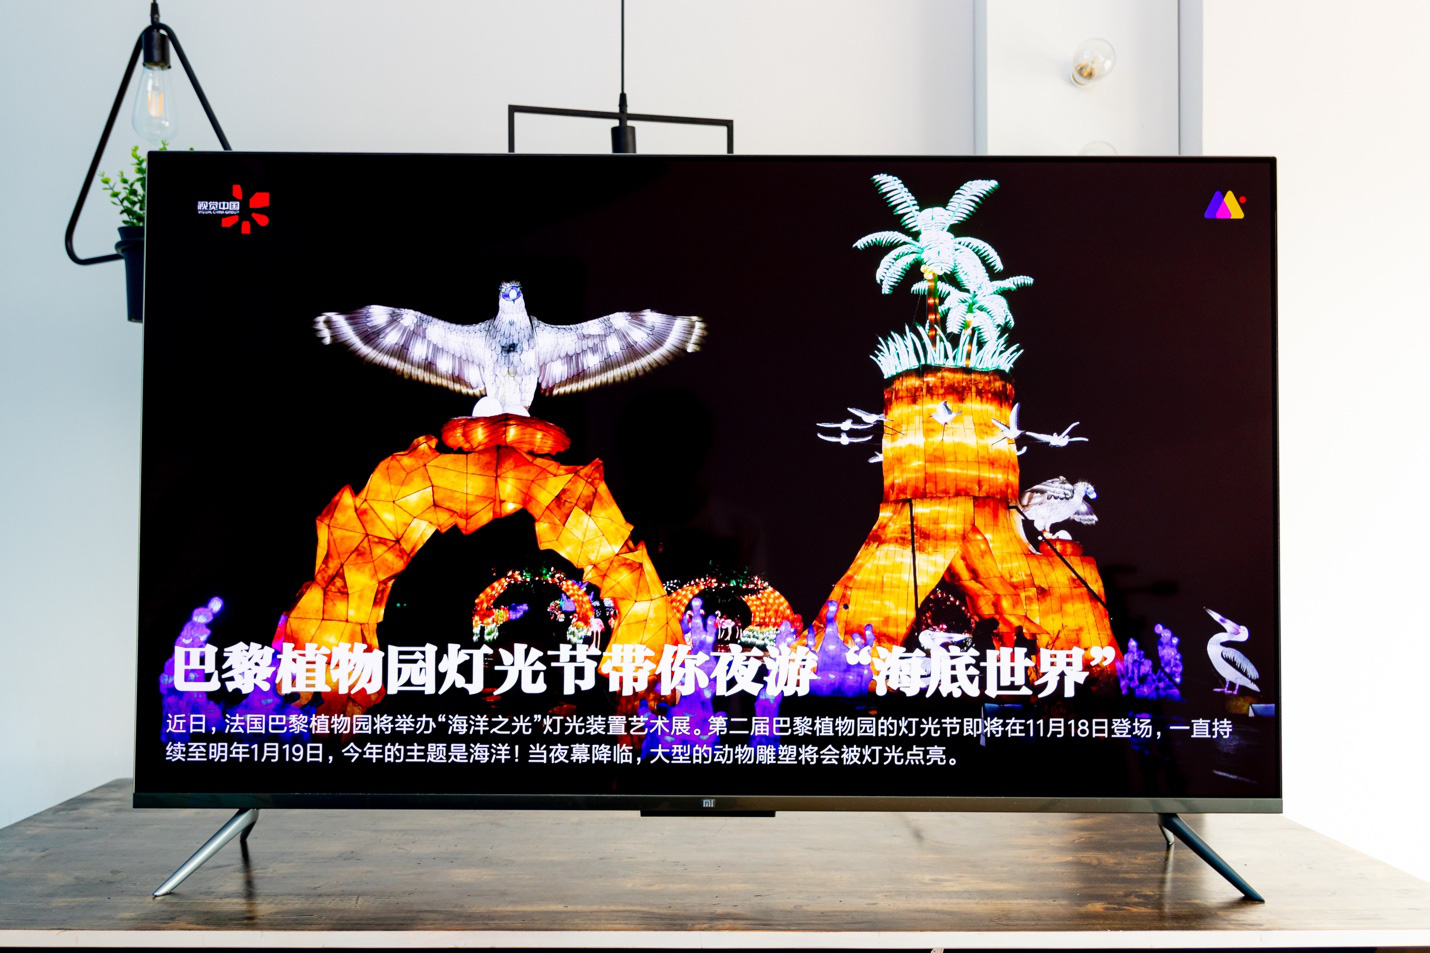 Xiaomi Mi TV 5 PRO: Định vị trong phân khúc TV cao cấp, liệu chiếc TV này có thật sự “PRO” như cái tên? - Ảnh 5.